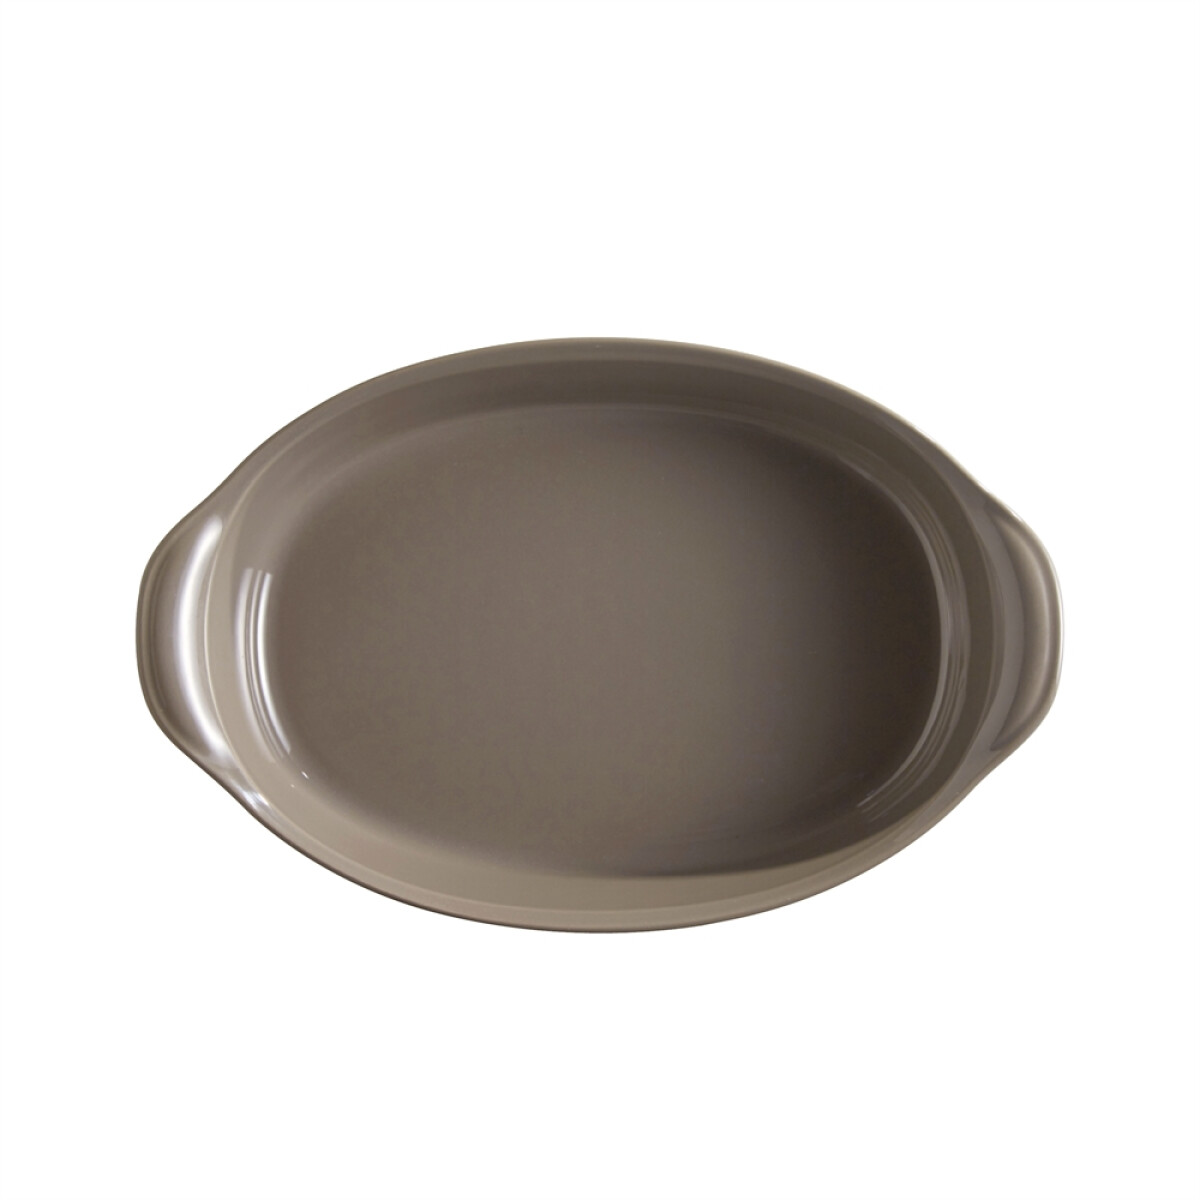 Керамична тава EMILE HENRY OVAL OVEN DISH - 35х22,5 см, цвят сиво-бежов